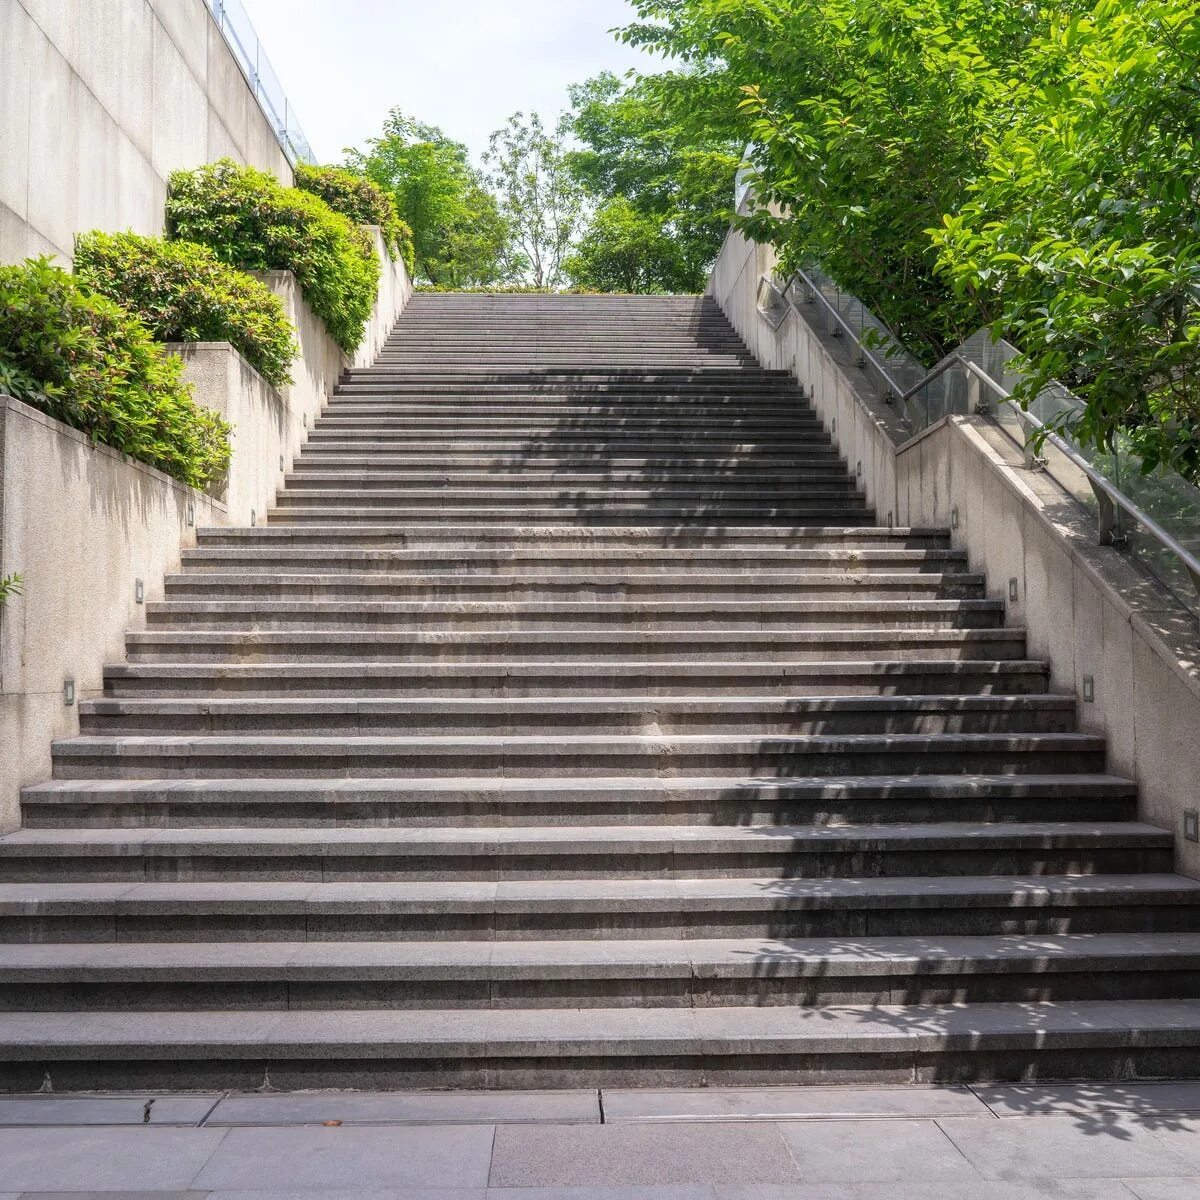 Ступеньки Сток. Down лестница. Street Stairs. The Stairs Тбилиси. Thousand steps